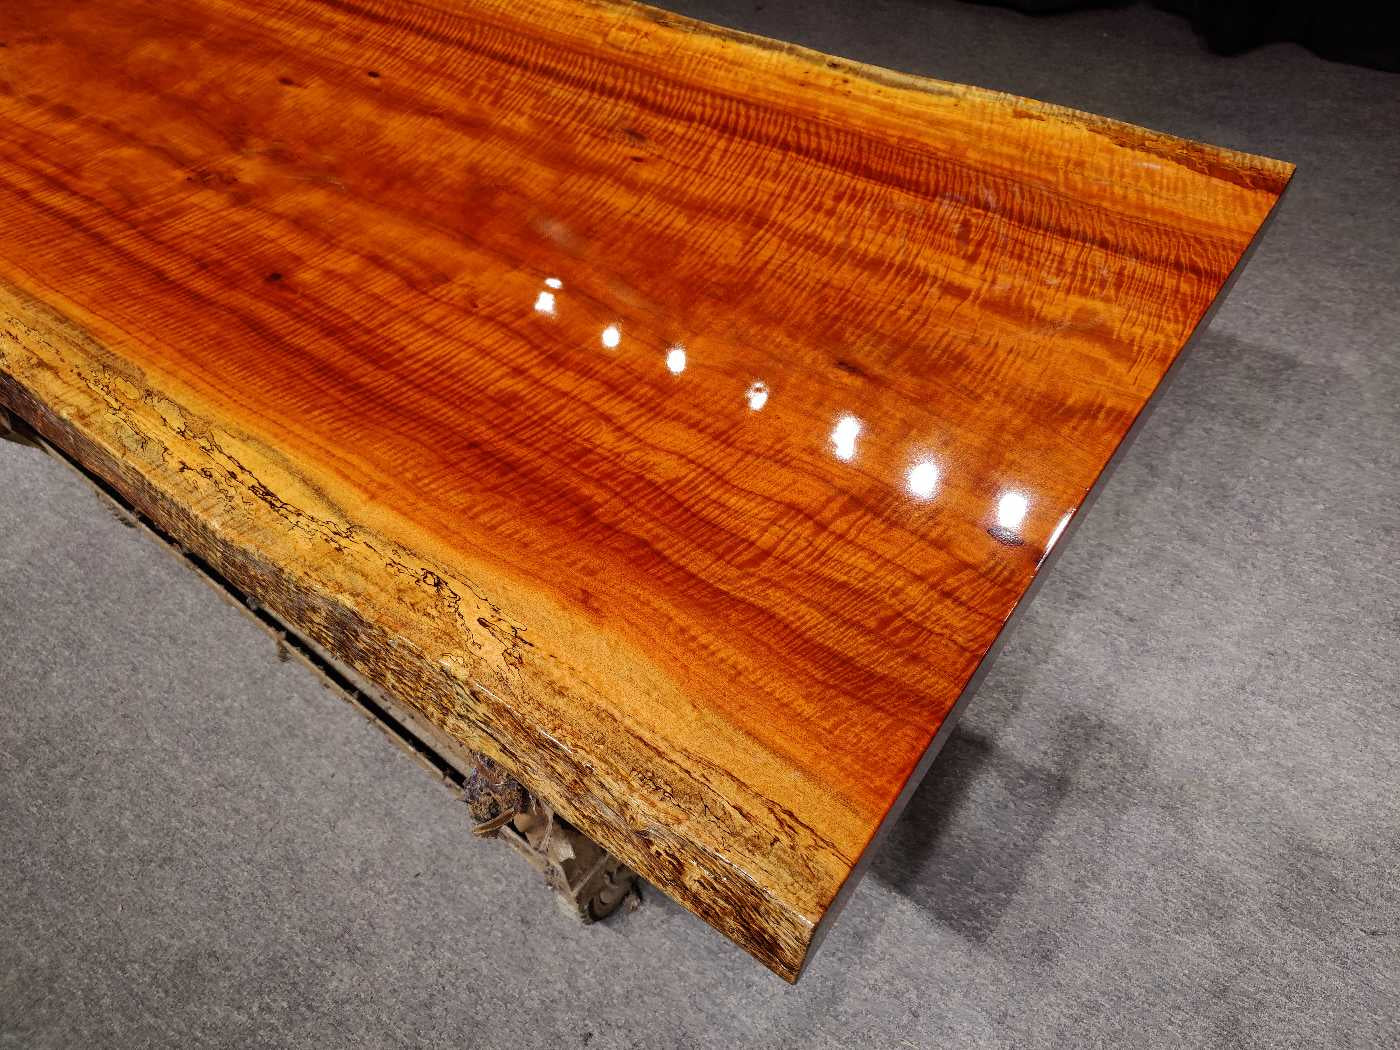 Losa de mesa de madera maciza de Zambia, <tc>Rhodesian Copal wood</tc> mesa de losa de borde vivo